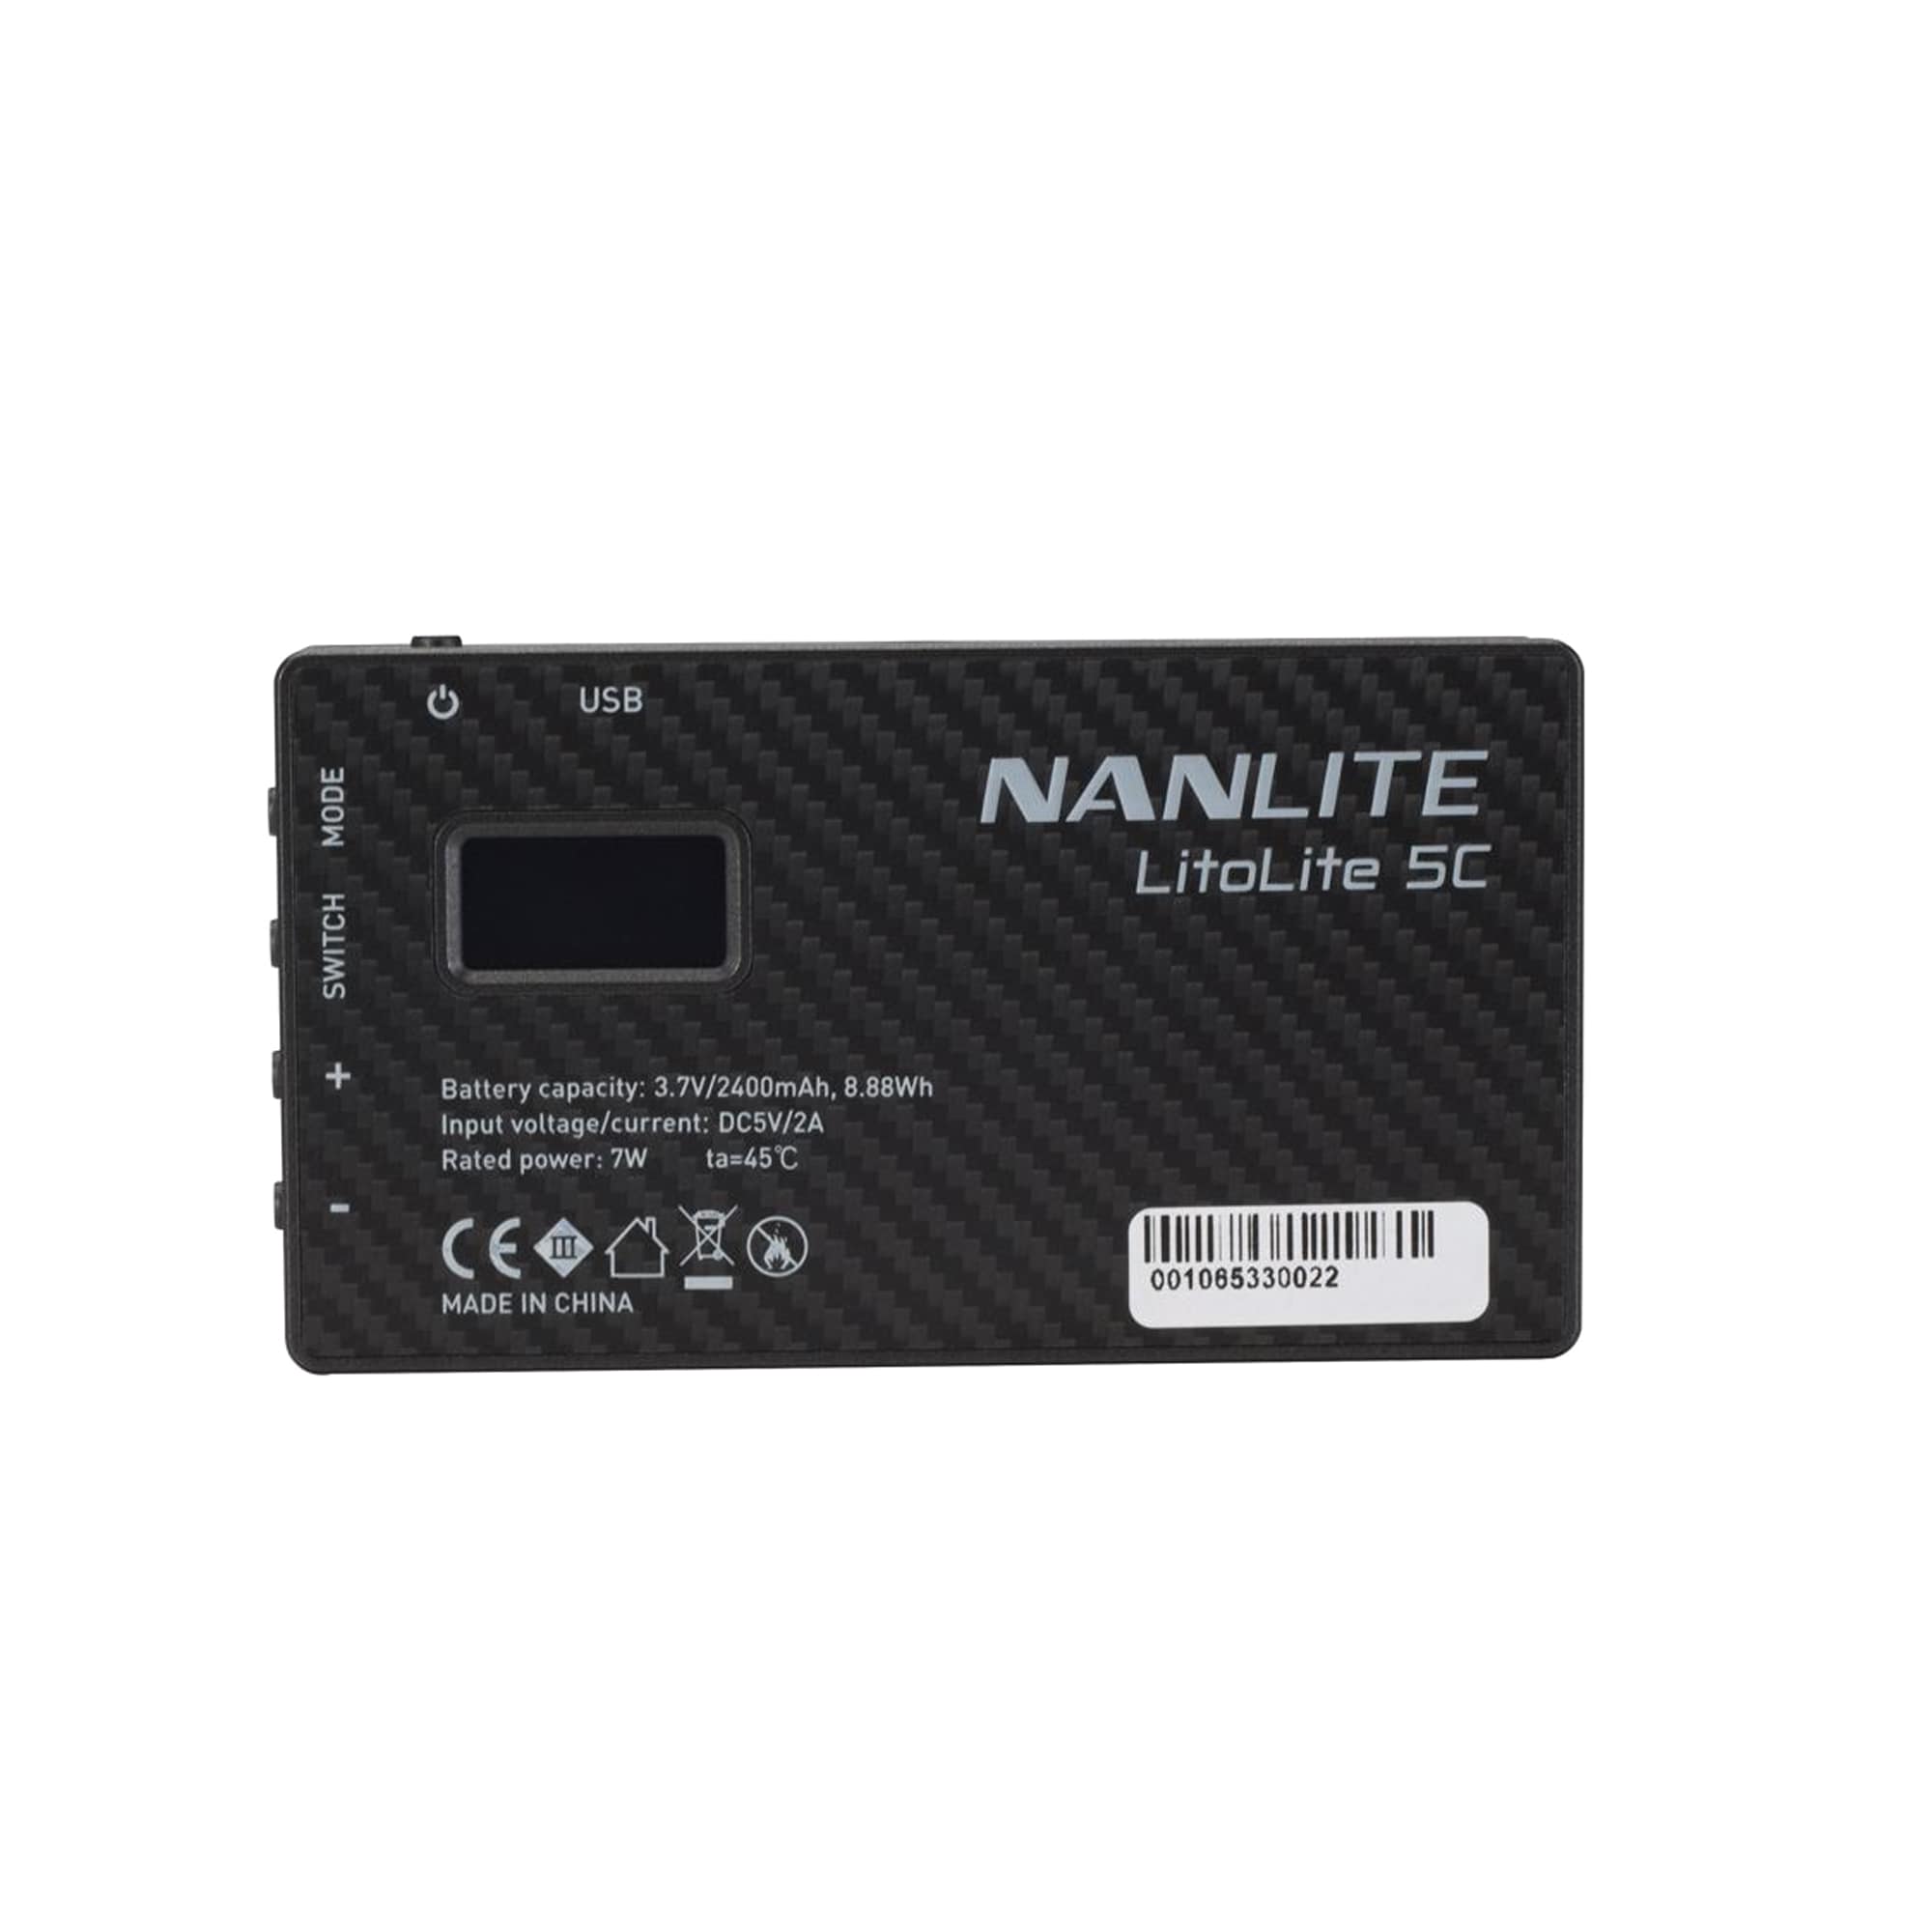 Nanlite Litolite 5C RGBWW Led Pocket light